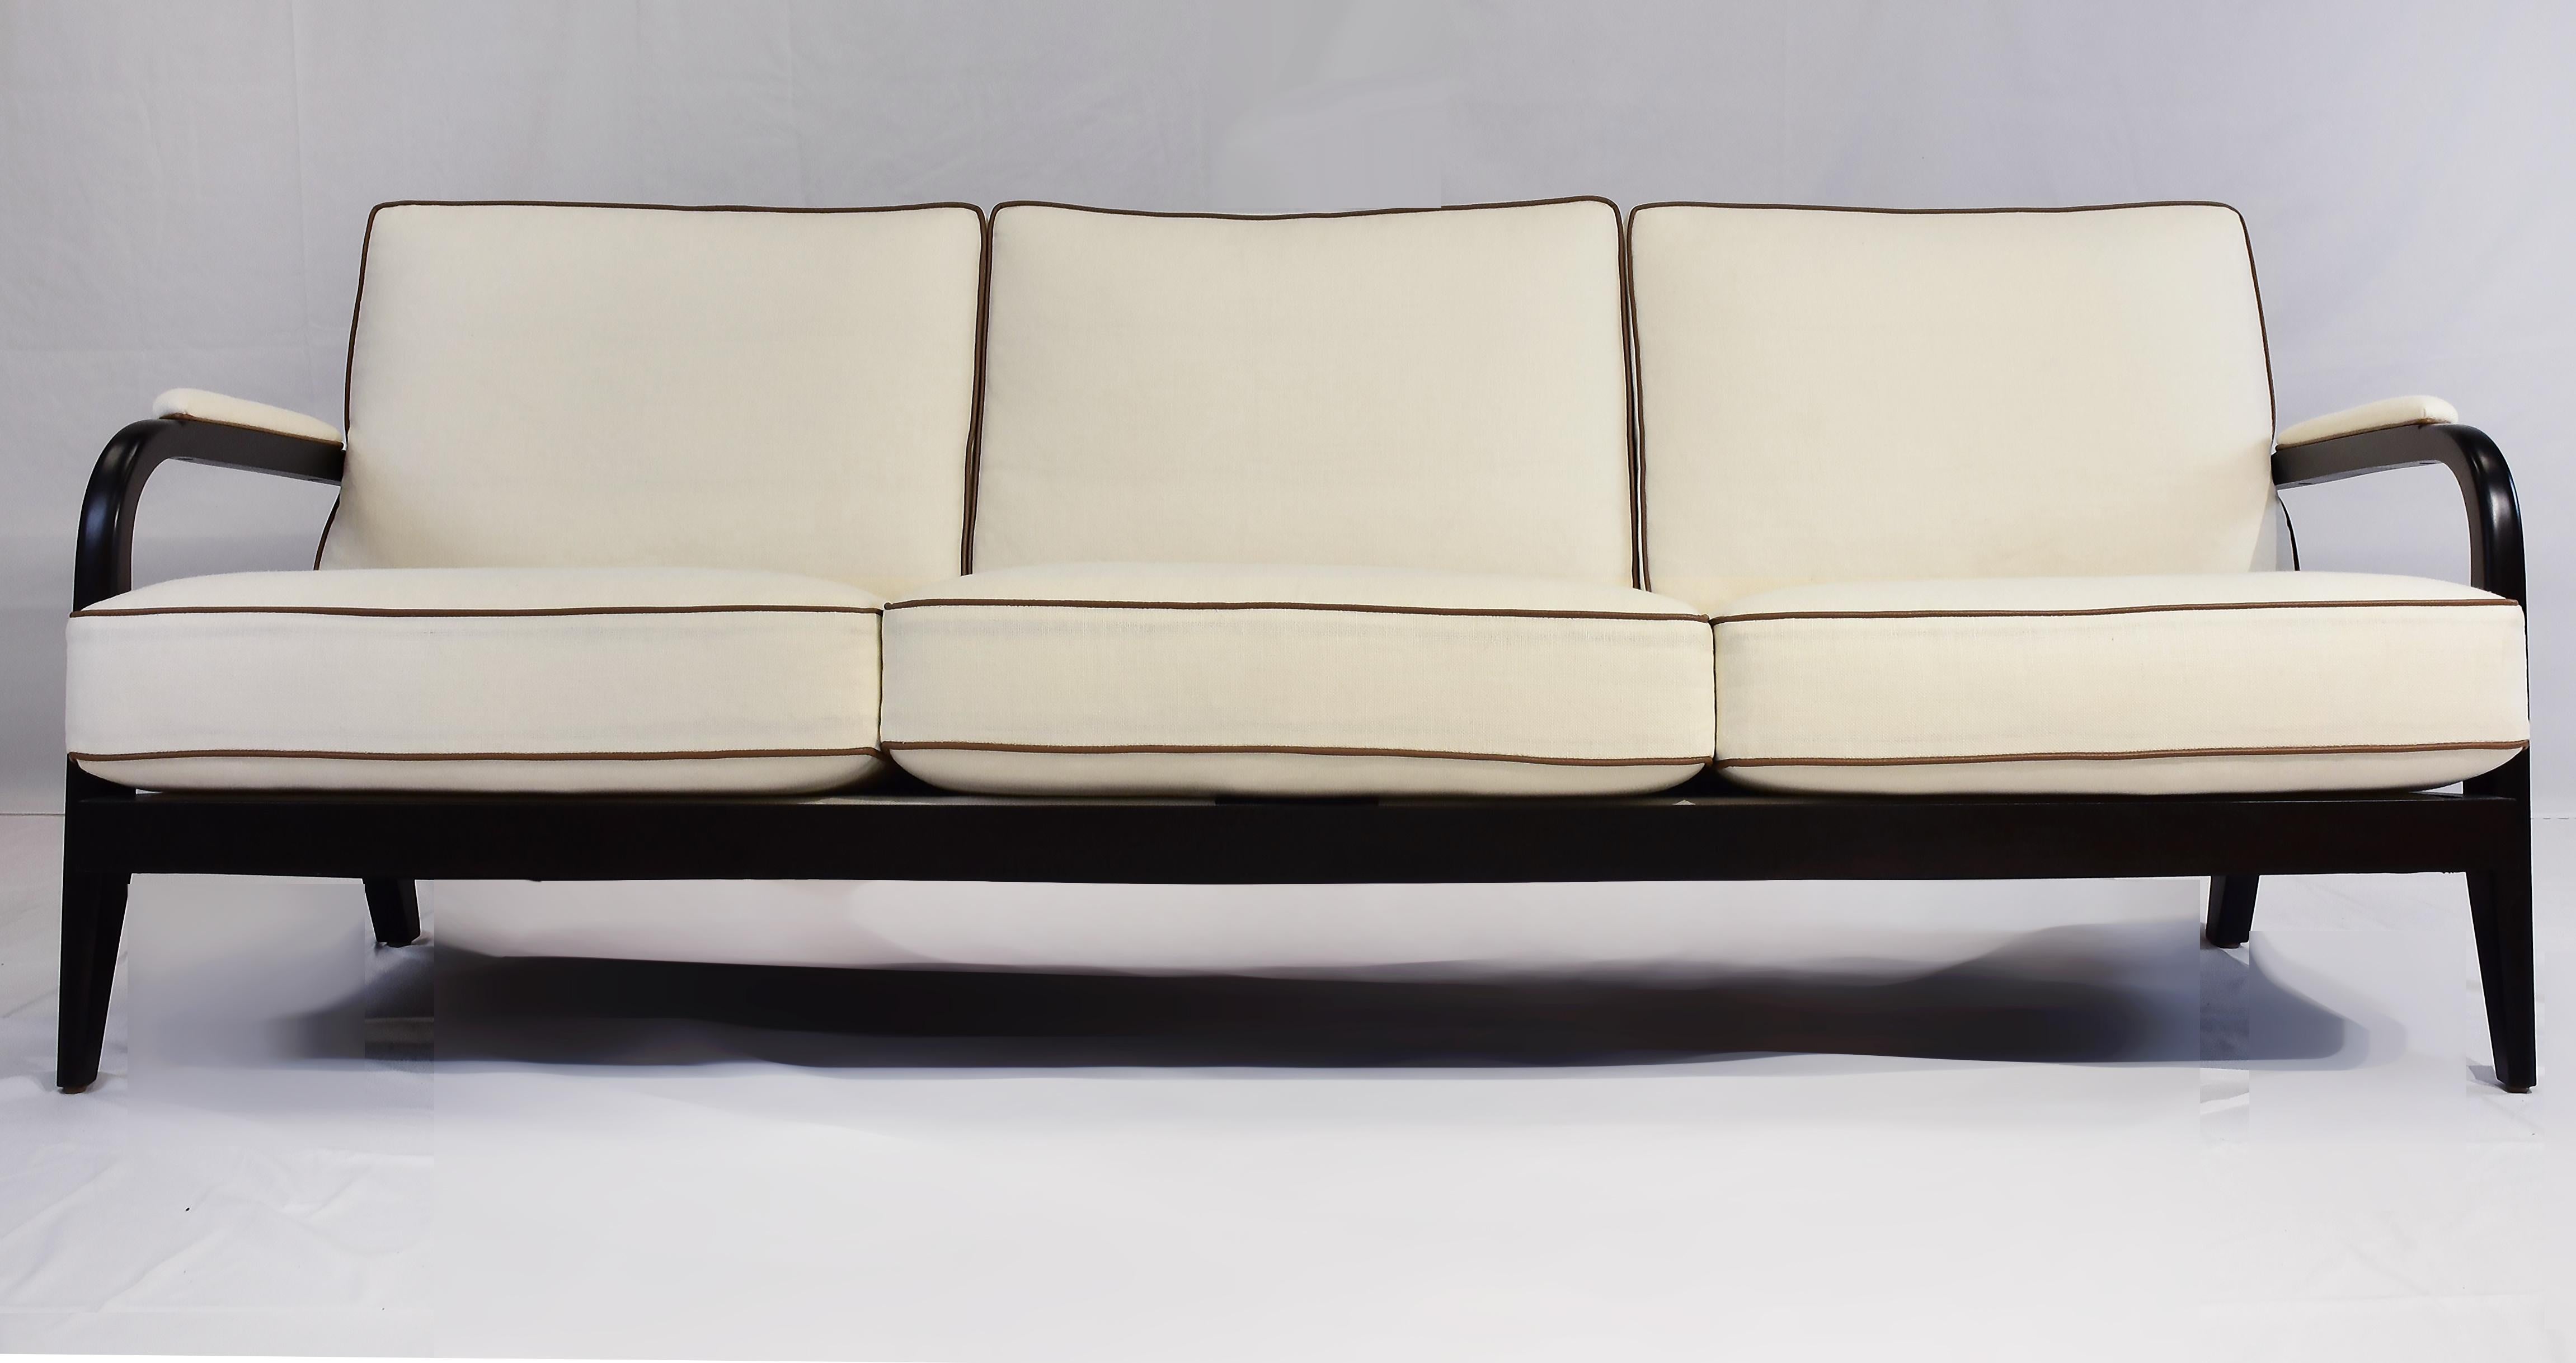 Le Jeune Upholstery 3 Seat Club Havana Sofa Floor Model, Mahagoni mit Nussbaum-Finish

Zum Verkauf angeboten wird ein Dreisitzer-Sofa von Le Jeune Upholstery im Stil der klassischen Moderne der 50er Jahre mit Mahagoni-Hartholz für den Rahmen. Das